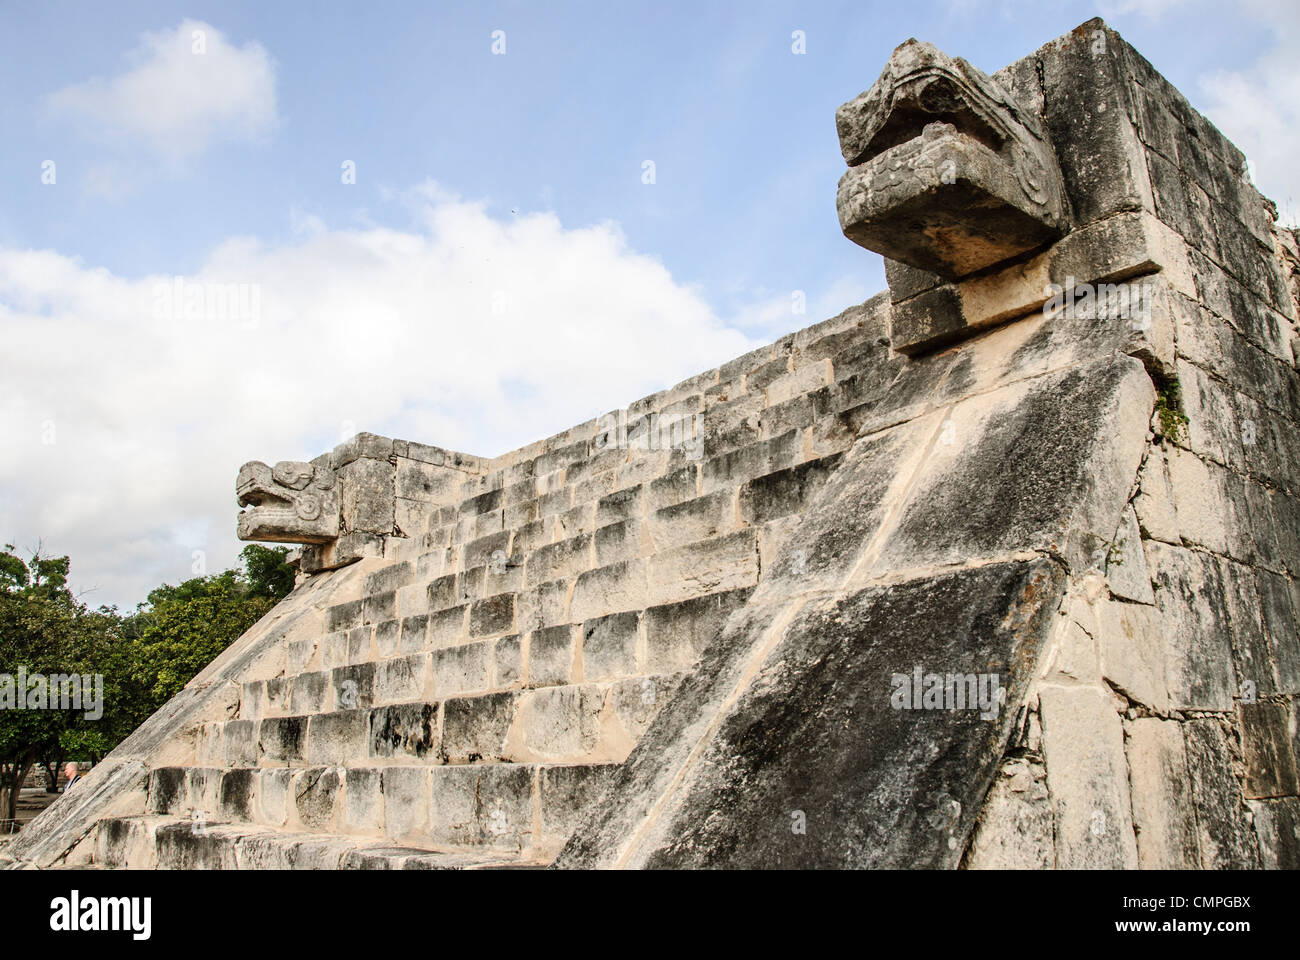 CHICHEN ITZA, Mexique - escaliers en pierre à Chichen Itza avec têtes de jaguar de chaque côté. Le Jaguar est un symbole récurrent dans la culture maya. Banque D'Images